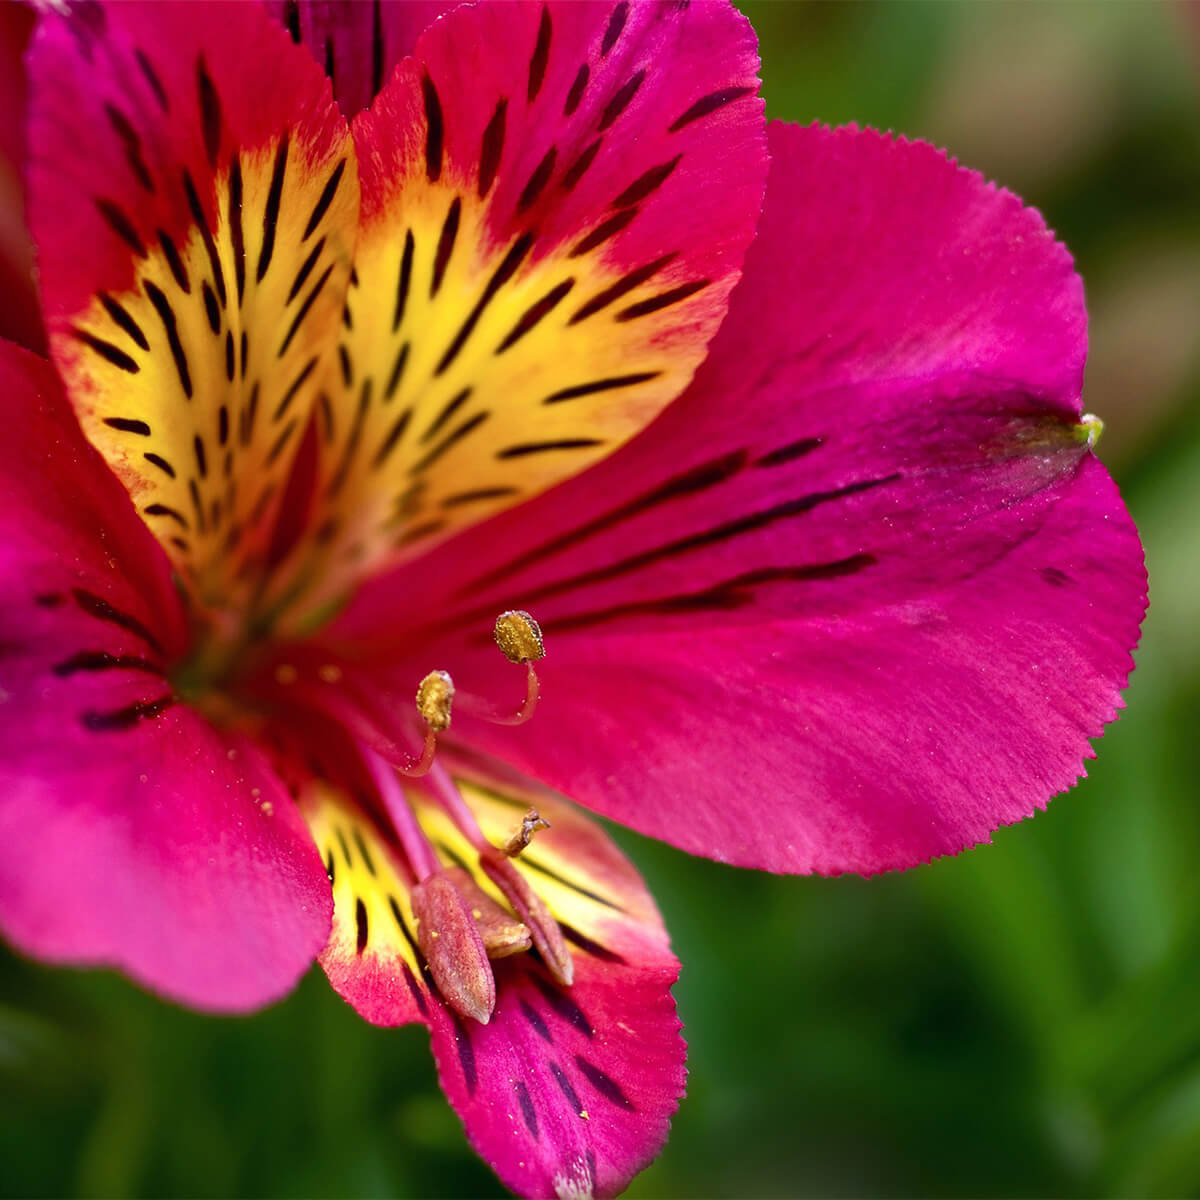 Alstroemeria - Peruvian Lily